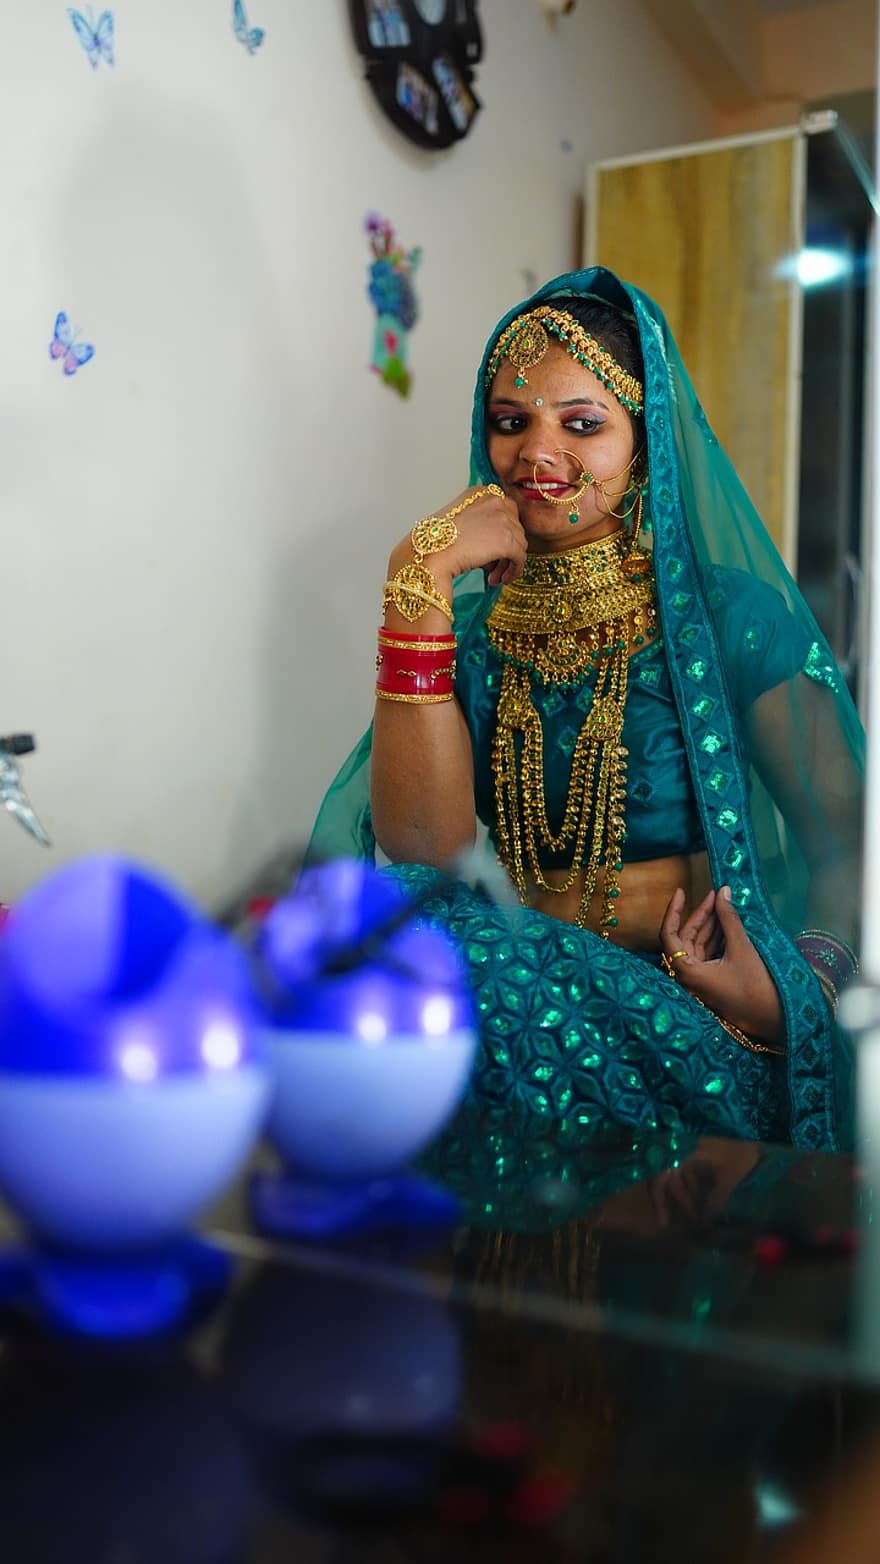 sonam prajapati, model-, acteur, Indiaas, meisje, vrouw, bruid